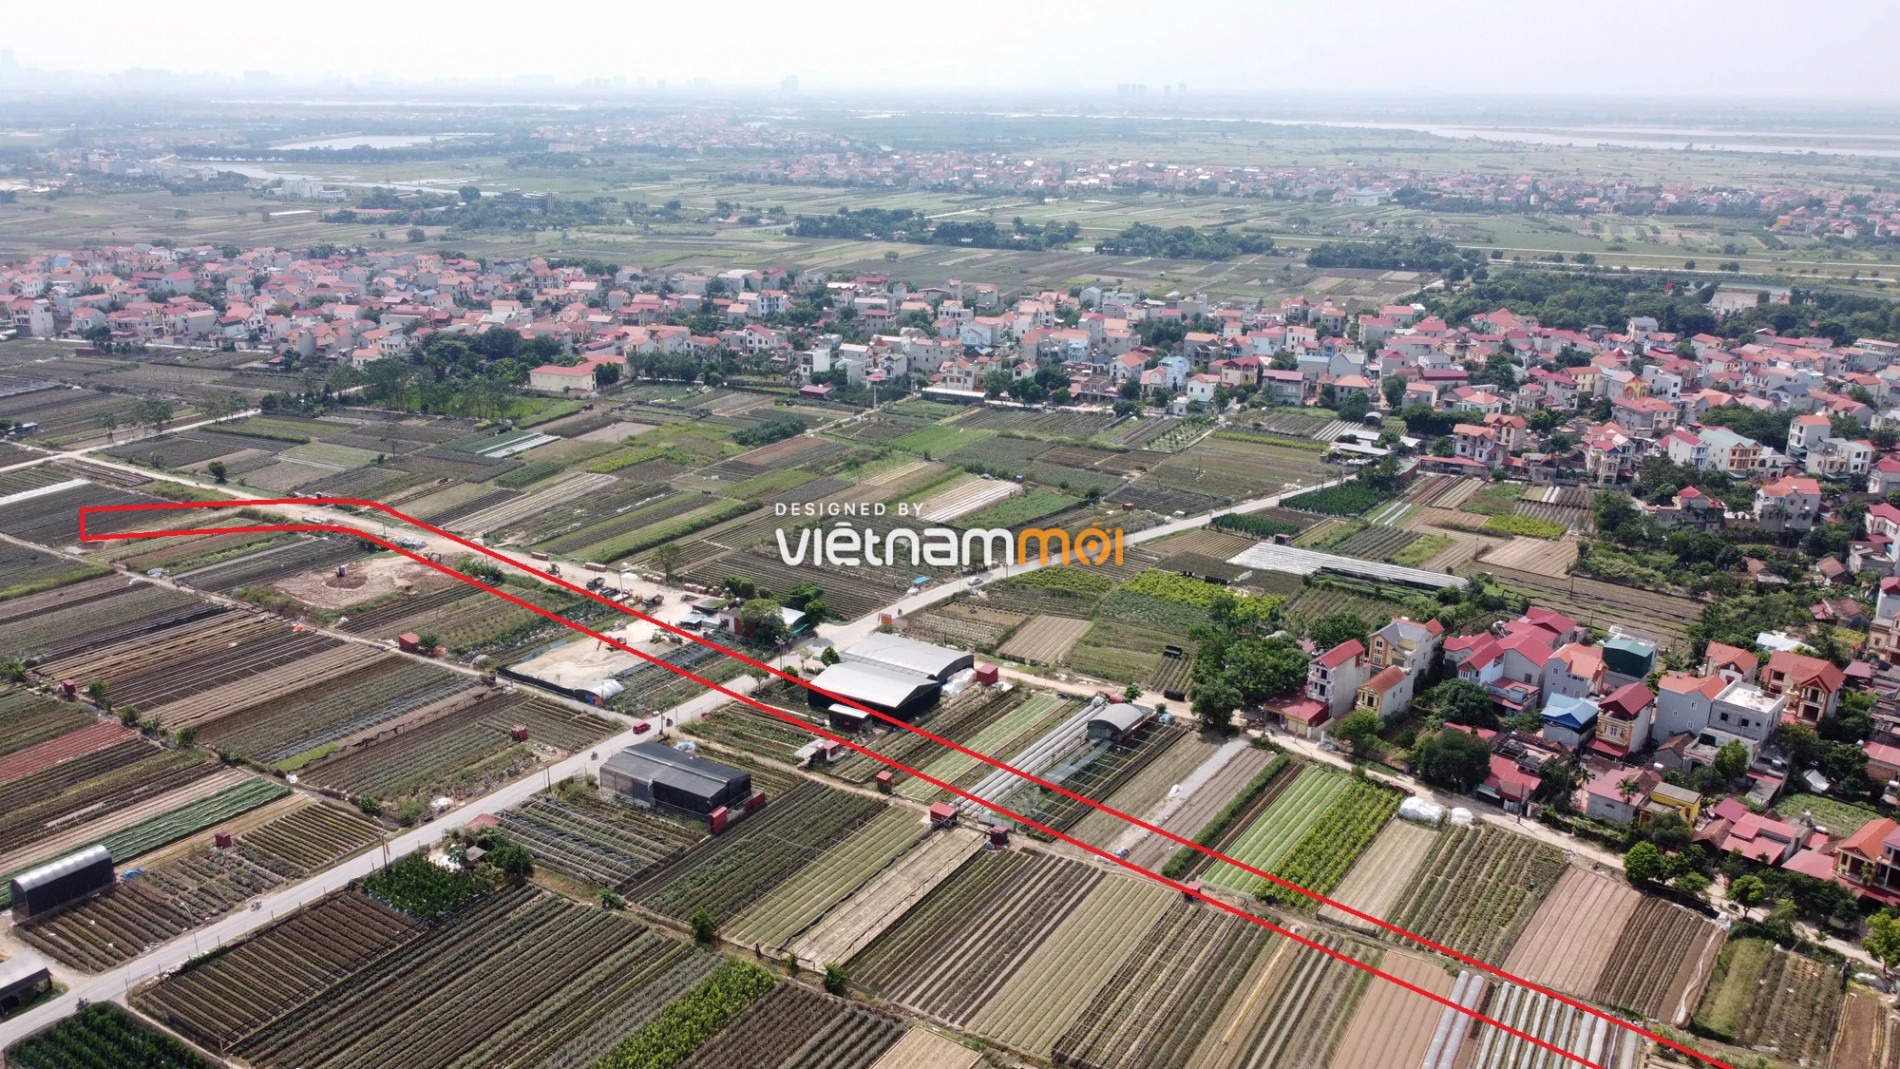 Những khu đất sắp thu hồi để mở đường ở xã Mê Linh, Mê Linh, Hà Nội (phần 1) - Ảnh 14.